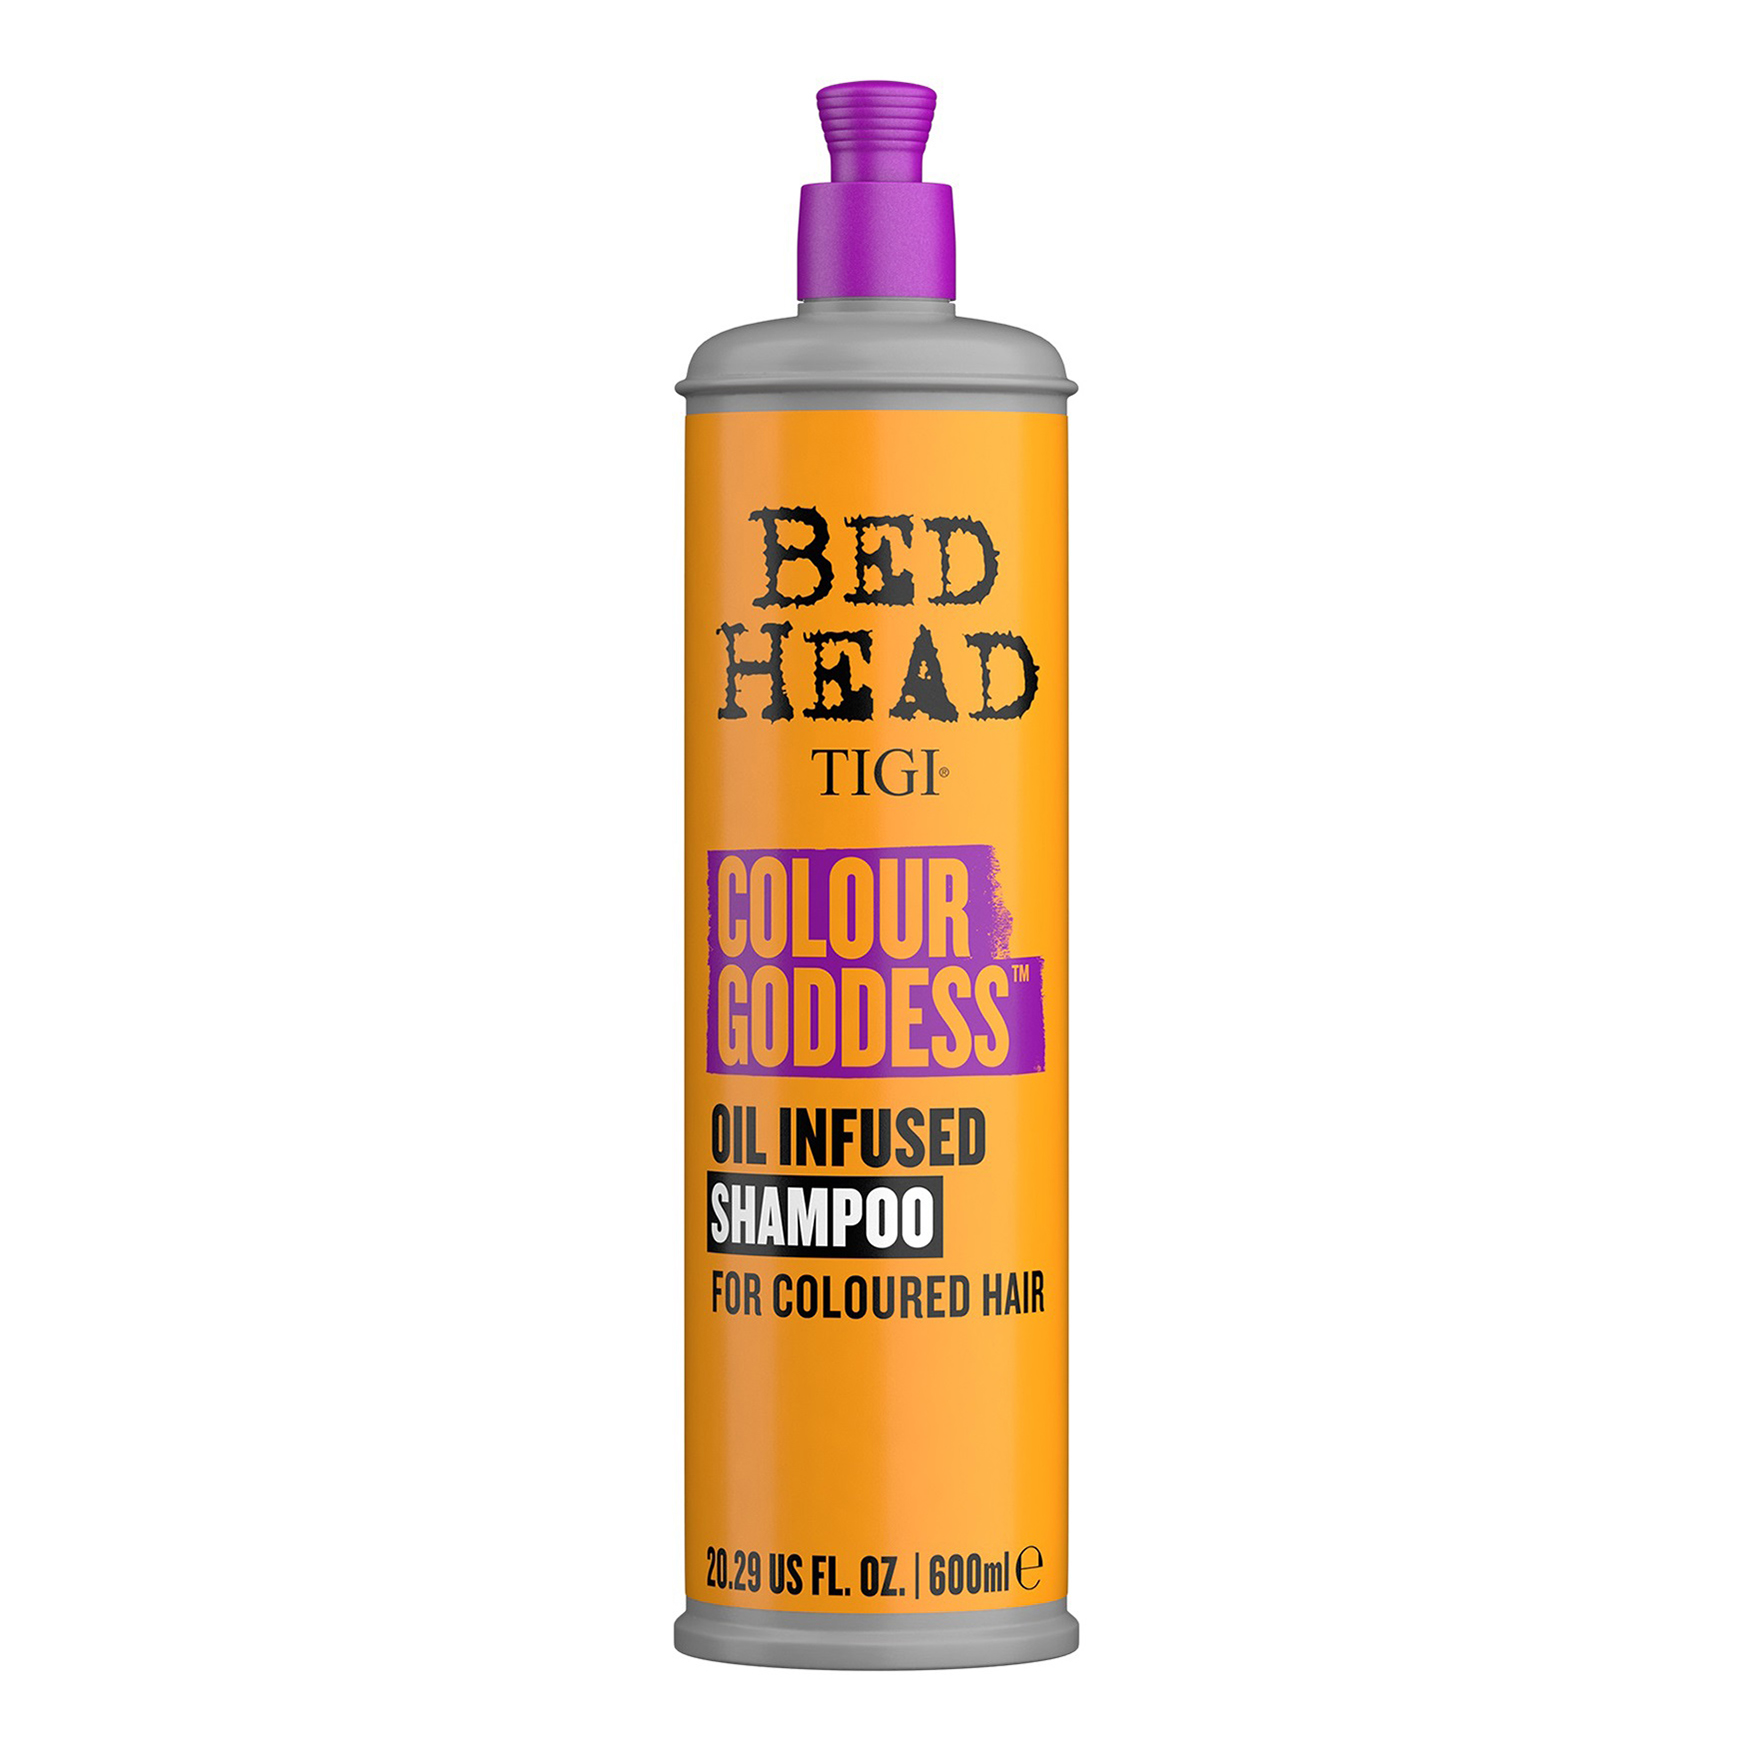 Купить Шампунь Tigi Bed Head Colour Goddes Oil Infused Shampoo для окрашенных волос, 600 мл